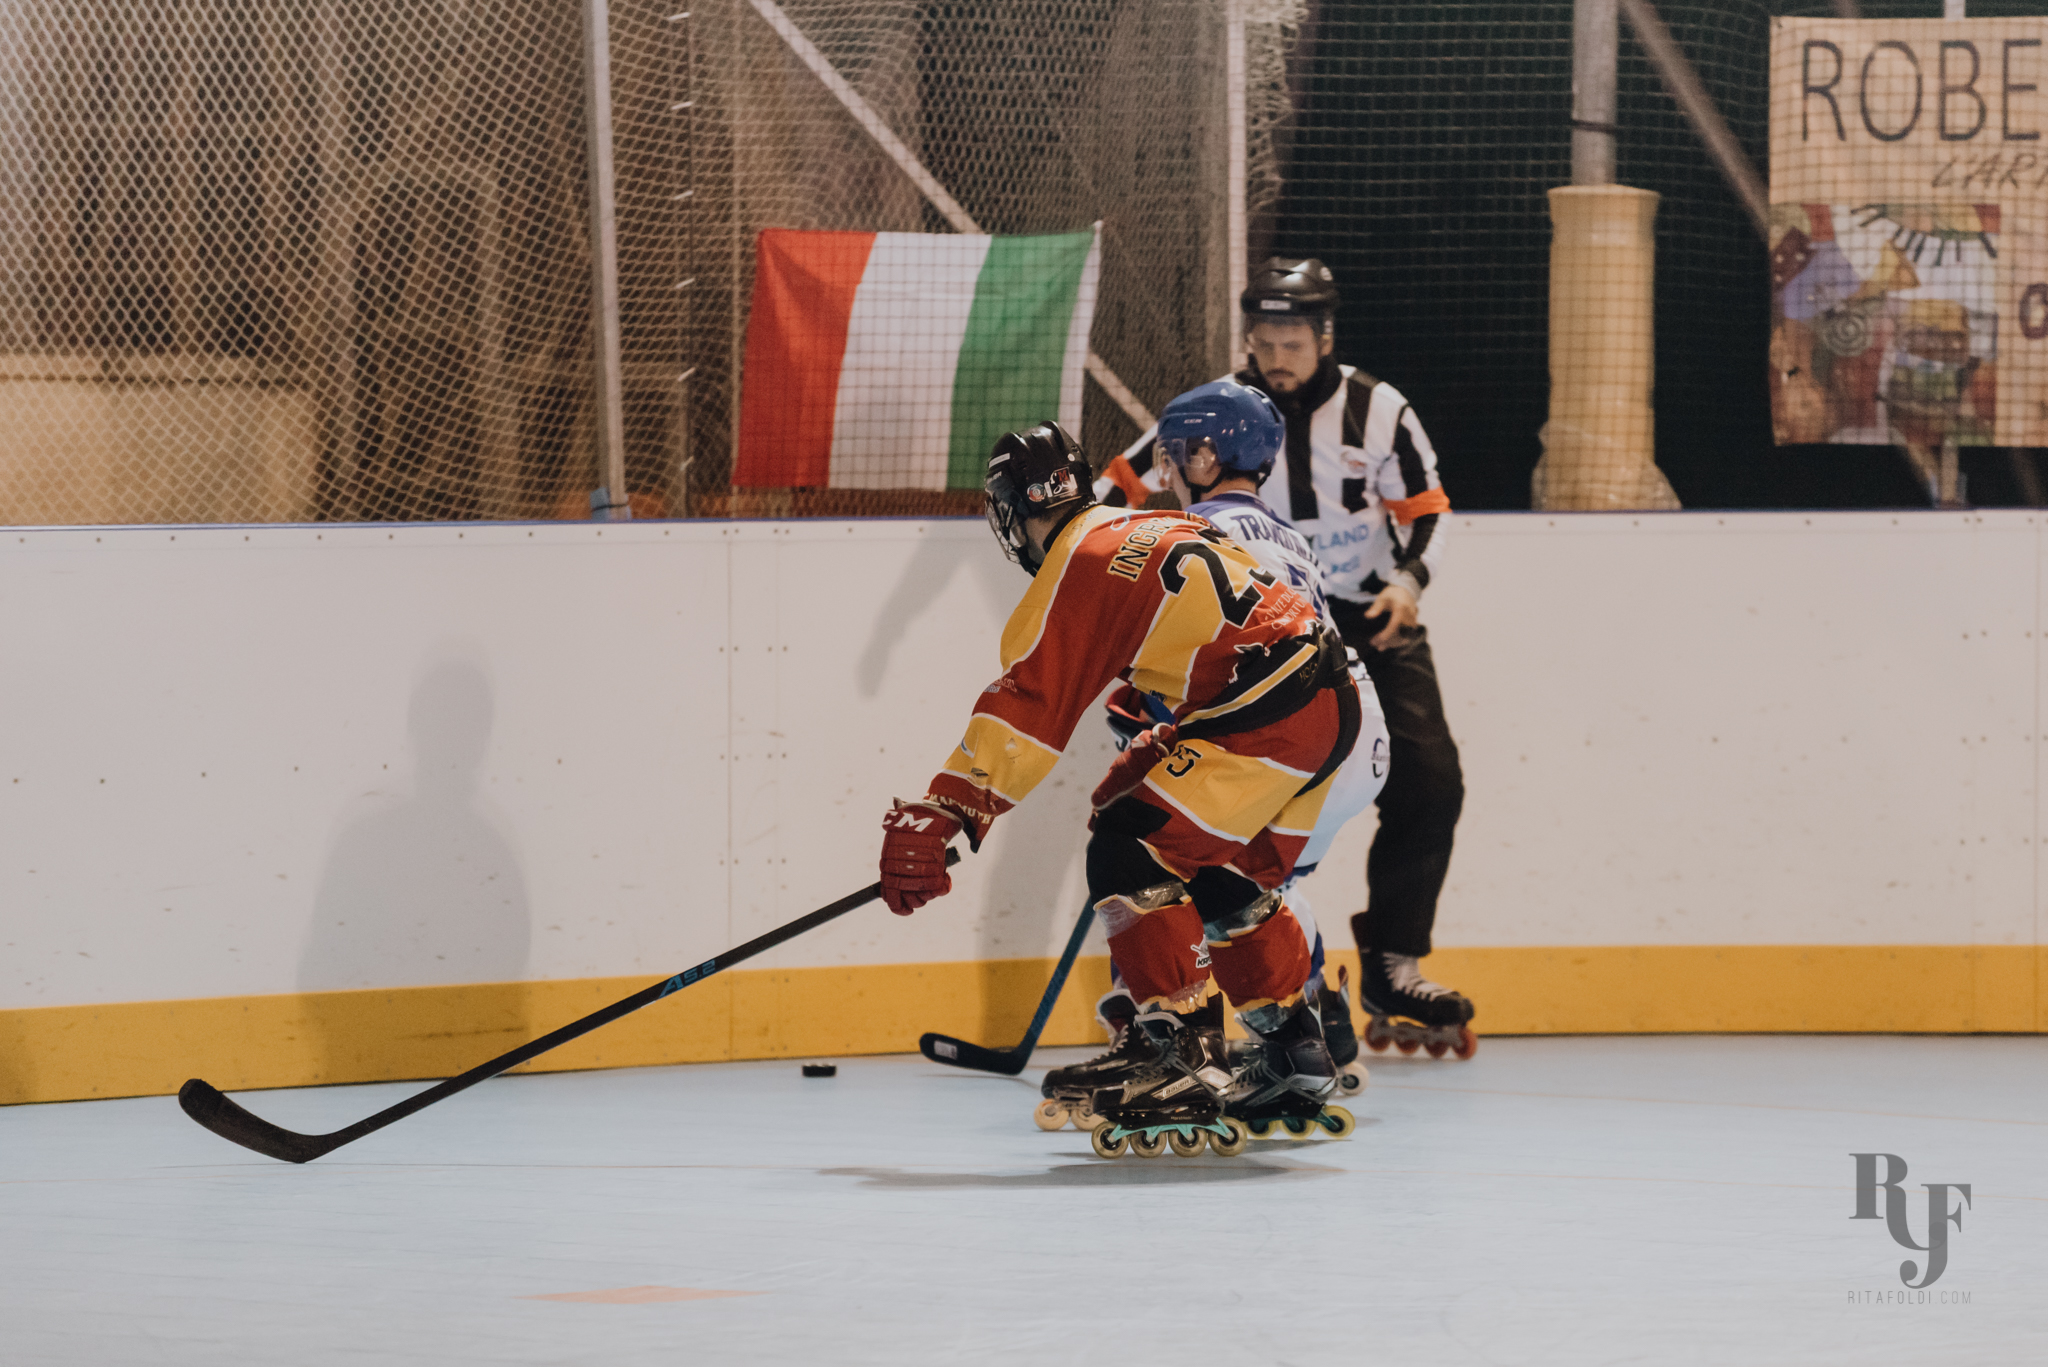 Hockey Mammuth, hockey e pattinaggio a roma, hockey giovanile, Mammuth Roma, Mammuth hockey roma, Cv Skating, sports photo, FISR, inline hockey, Rita Foldi photo